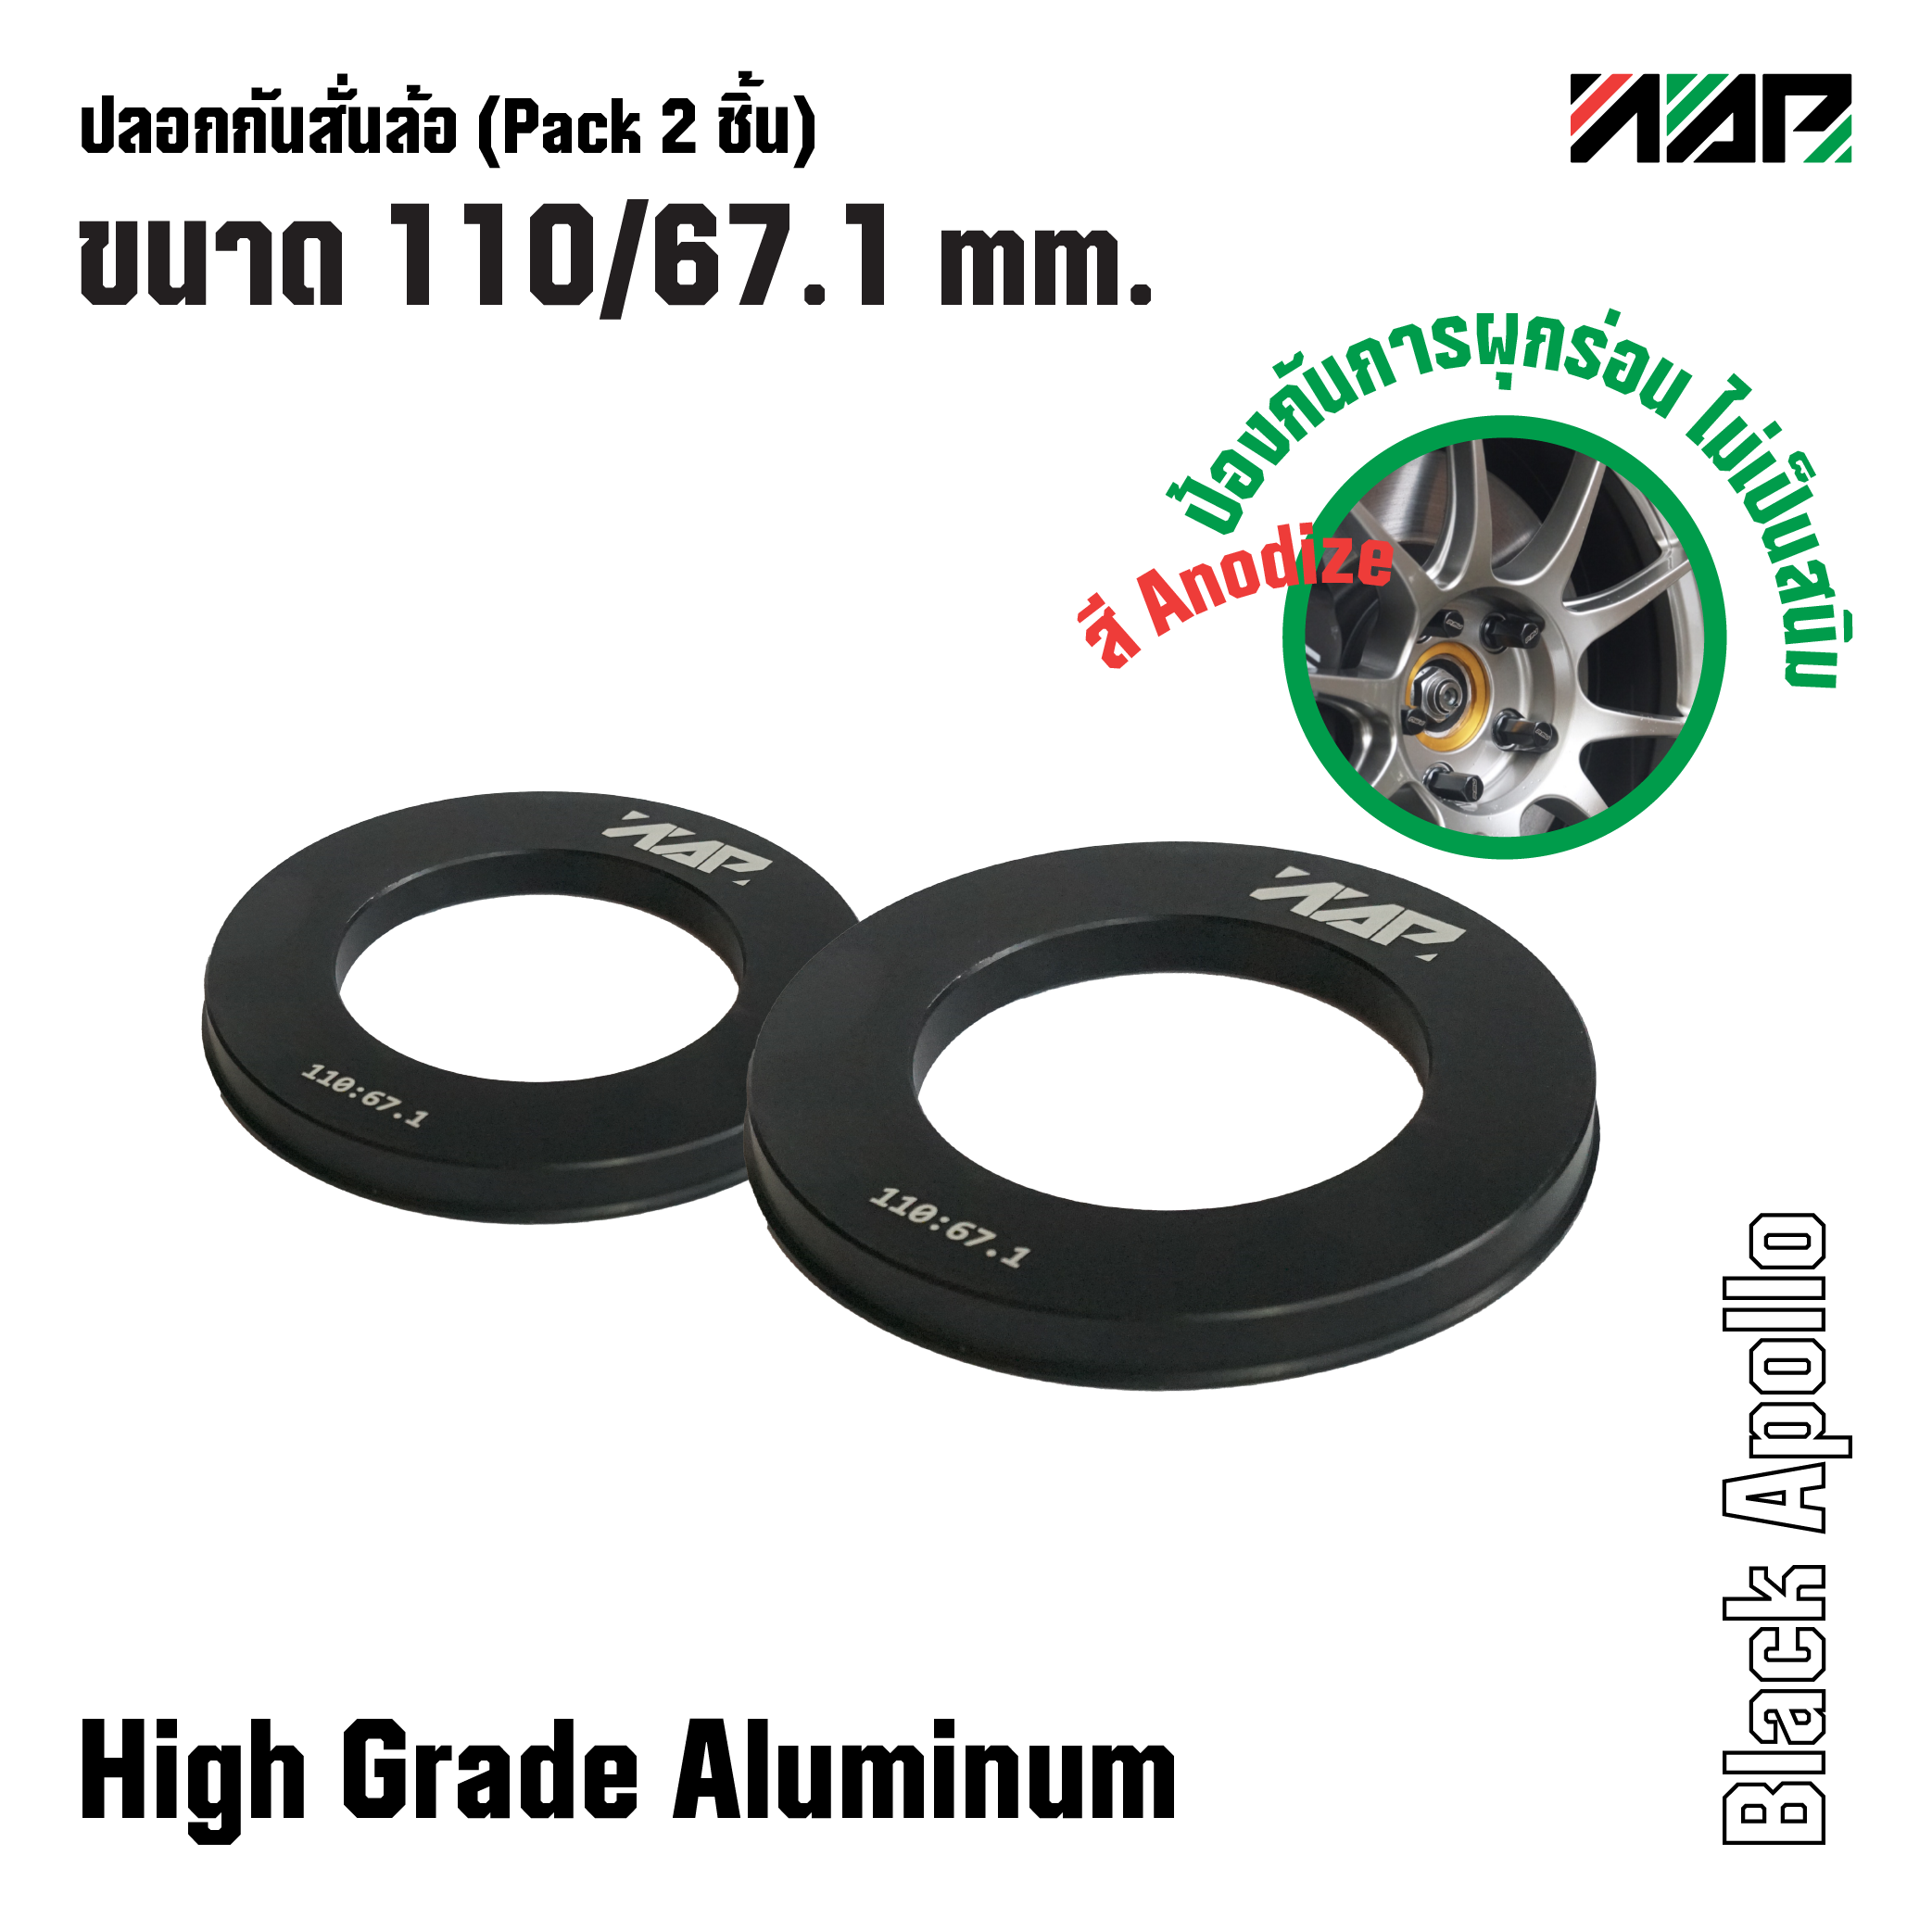 ปลอกกันสั่นล้อ Hub ring 110/67.1 mm. (Pack 2 ชิ้น) สำหรับรถกระบะ, SUV, PPV สี Black Apollo